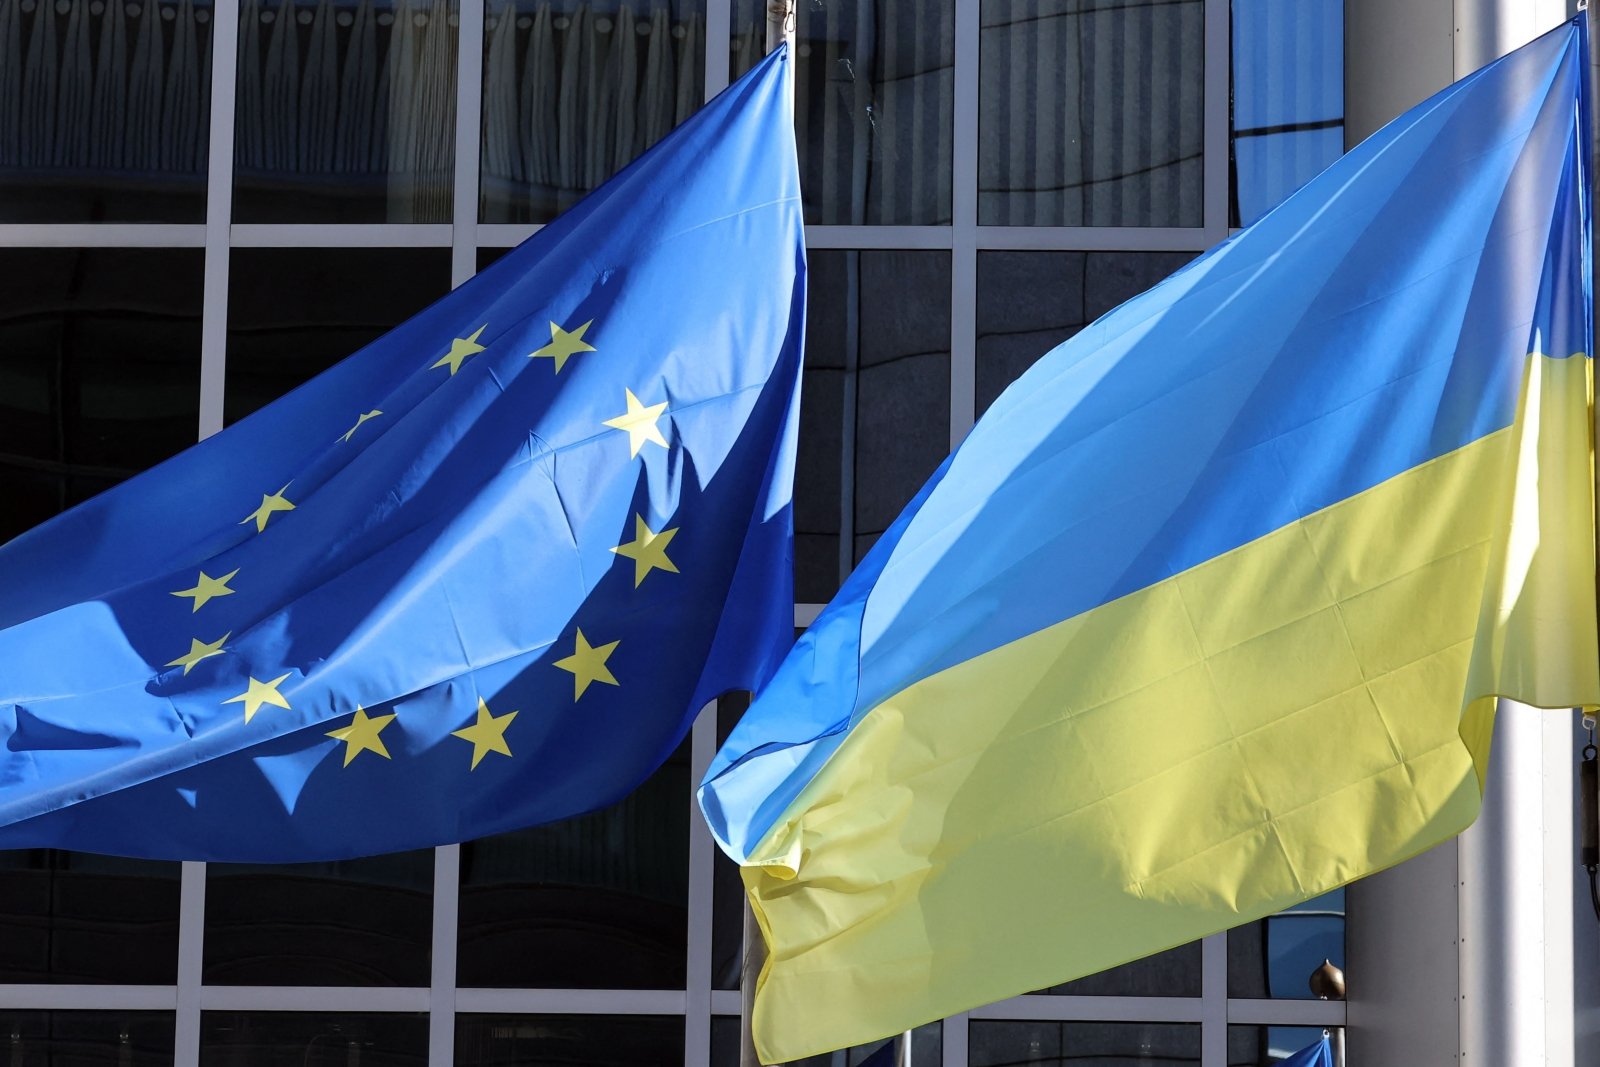 18 березня Україна отримала 300 млн євро фінансової допомоги Європейського Союзу, повідомляє Міністерство фінансів.